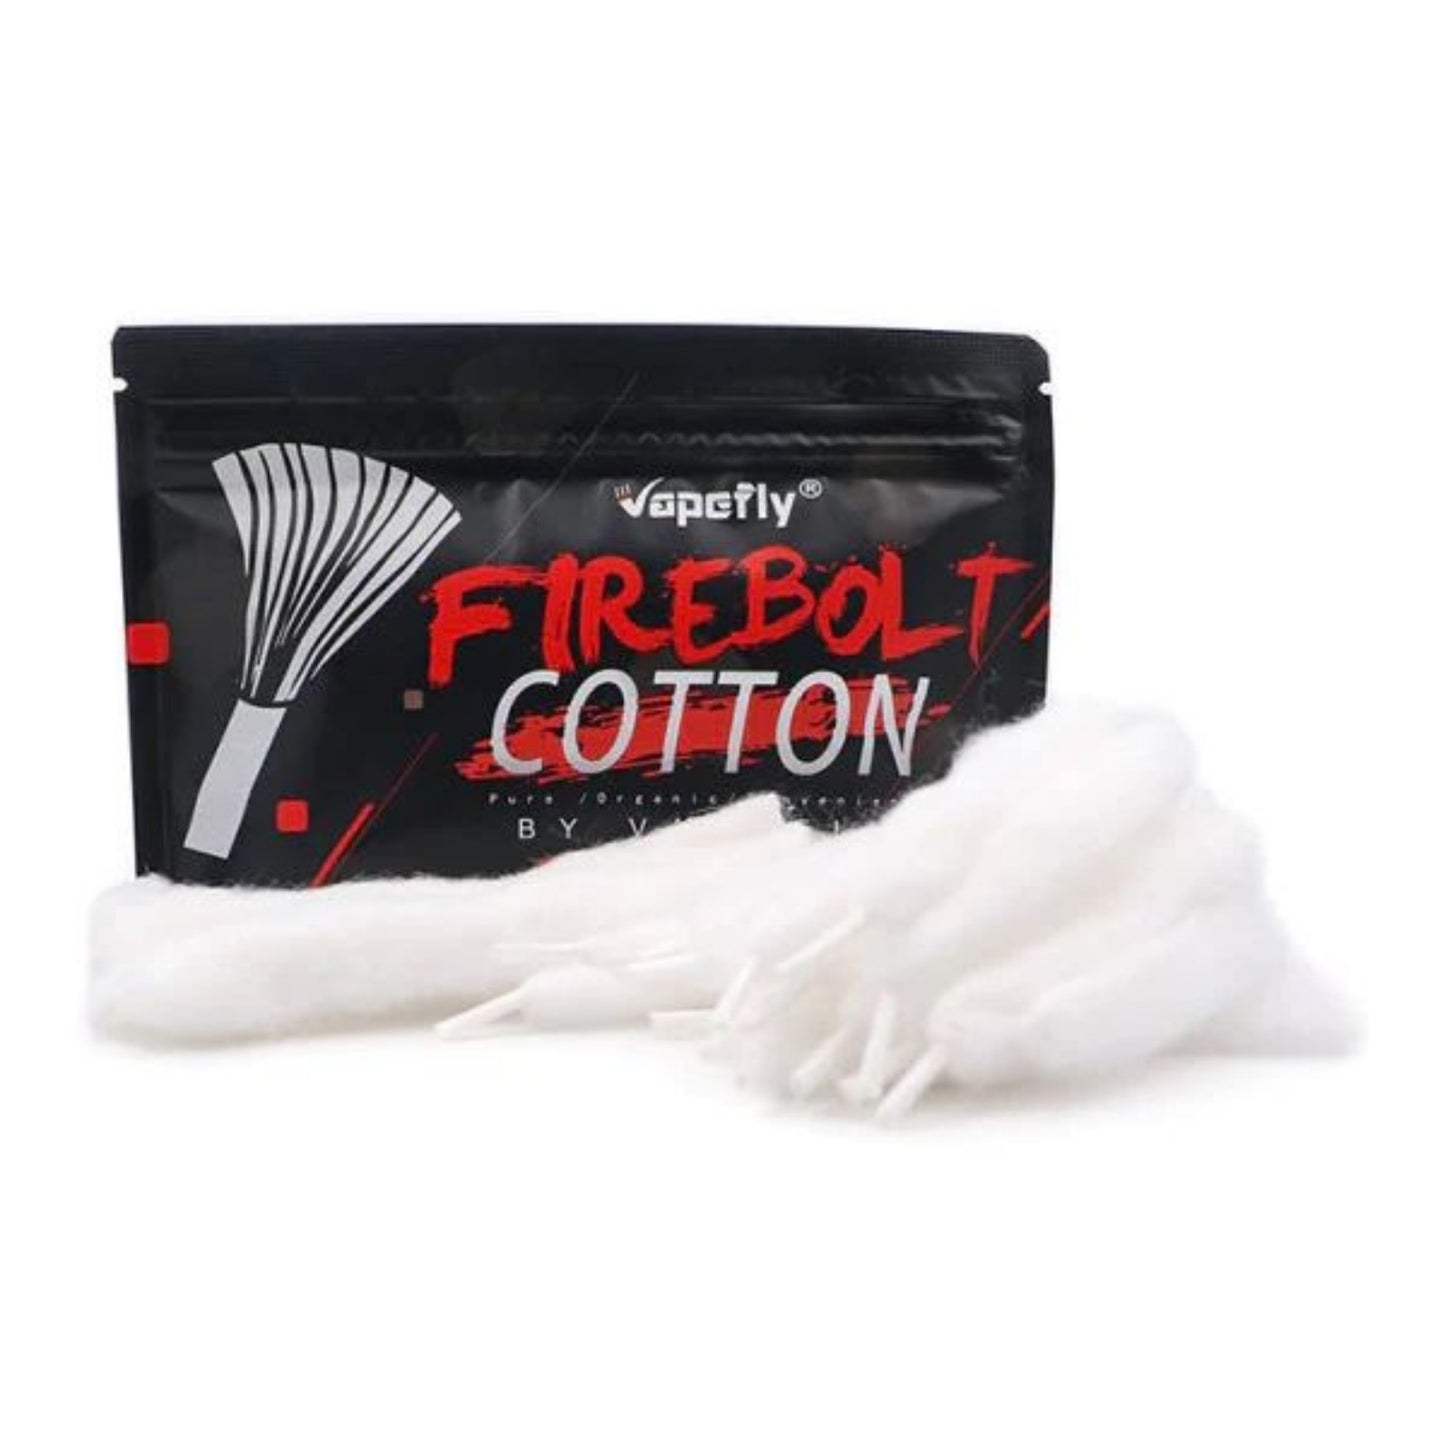 Vapefly Fire Bolt Cotton